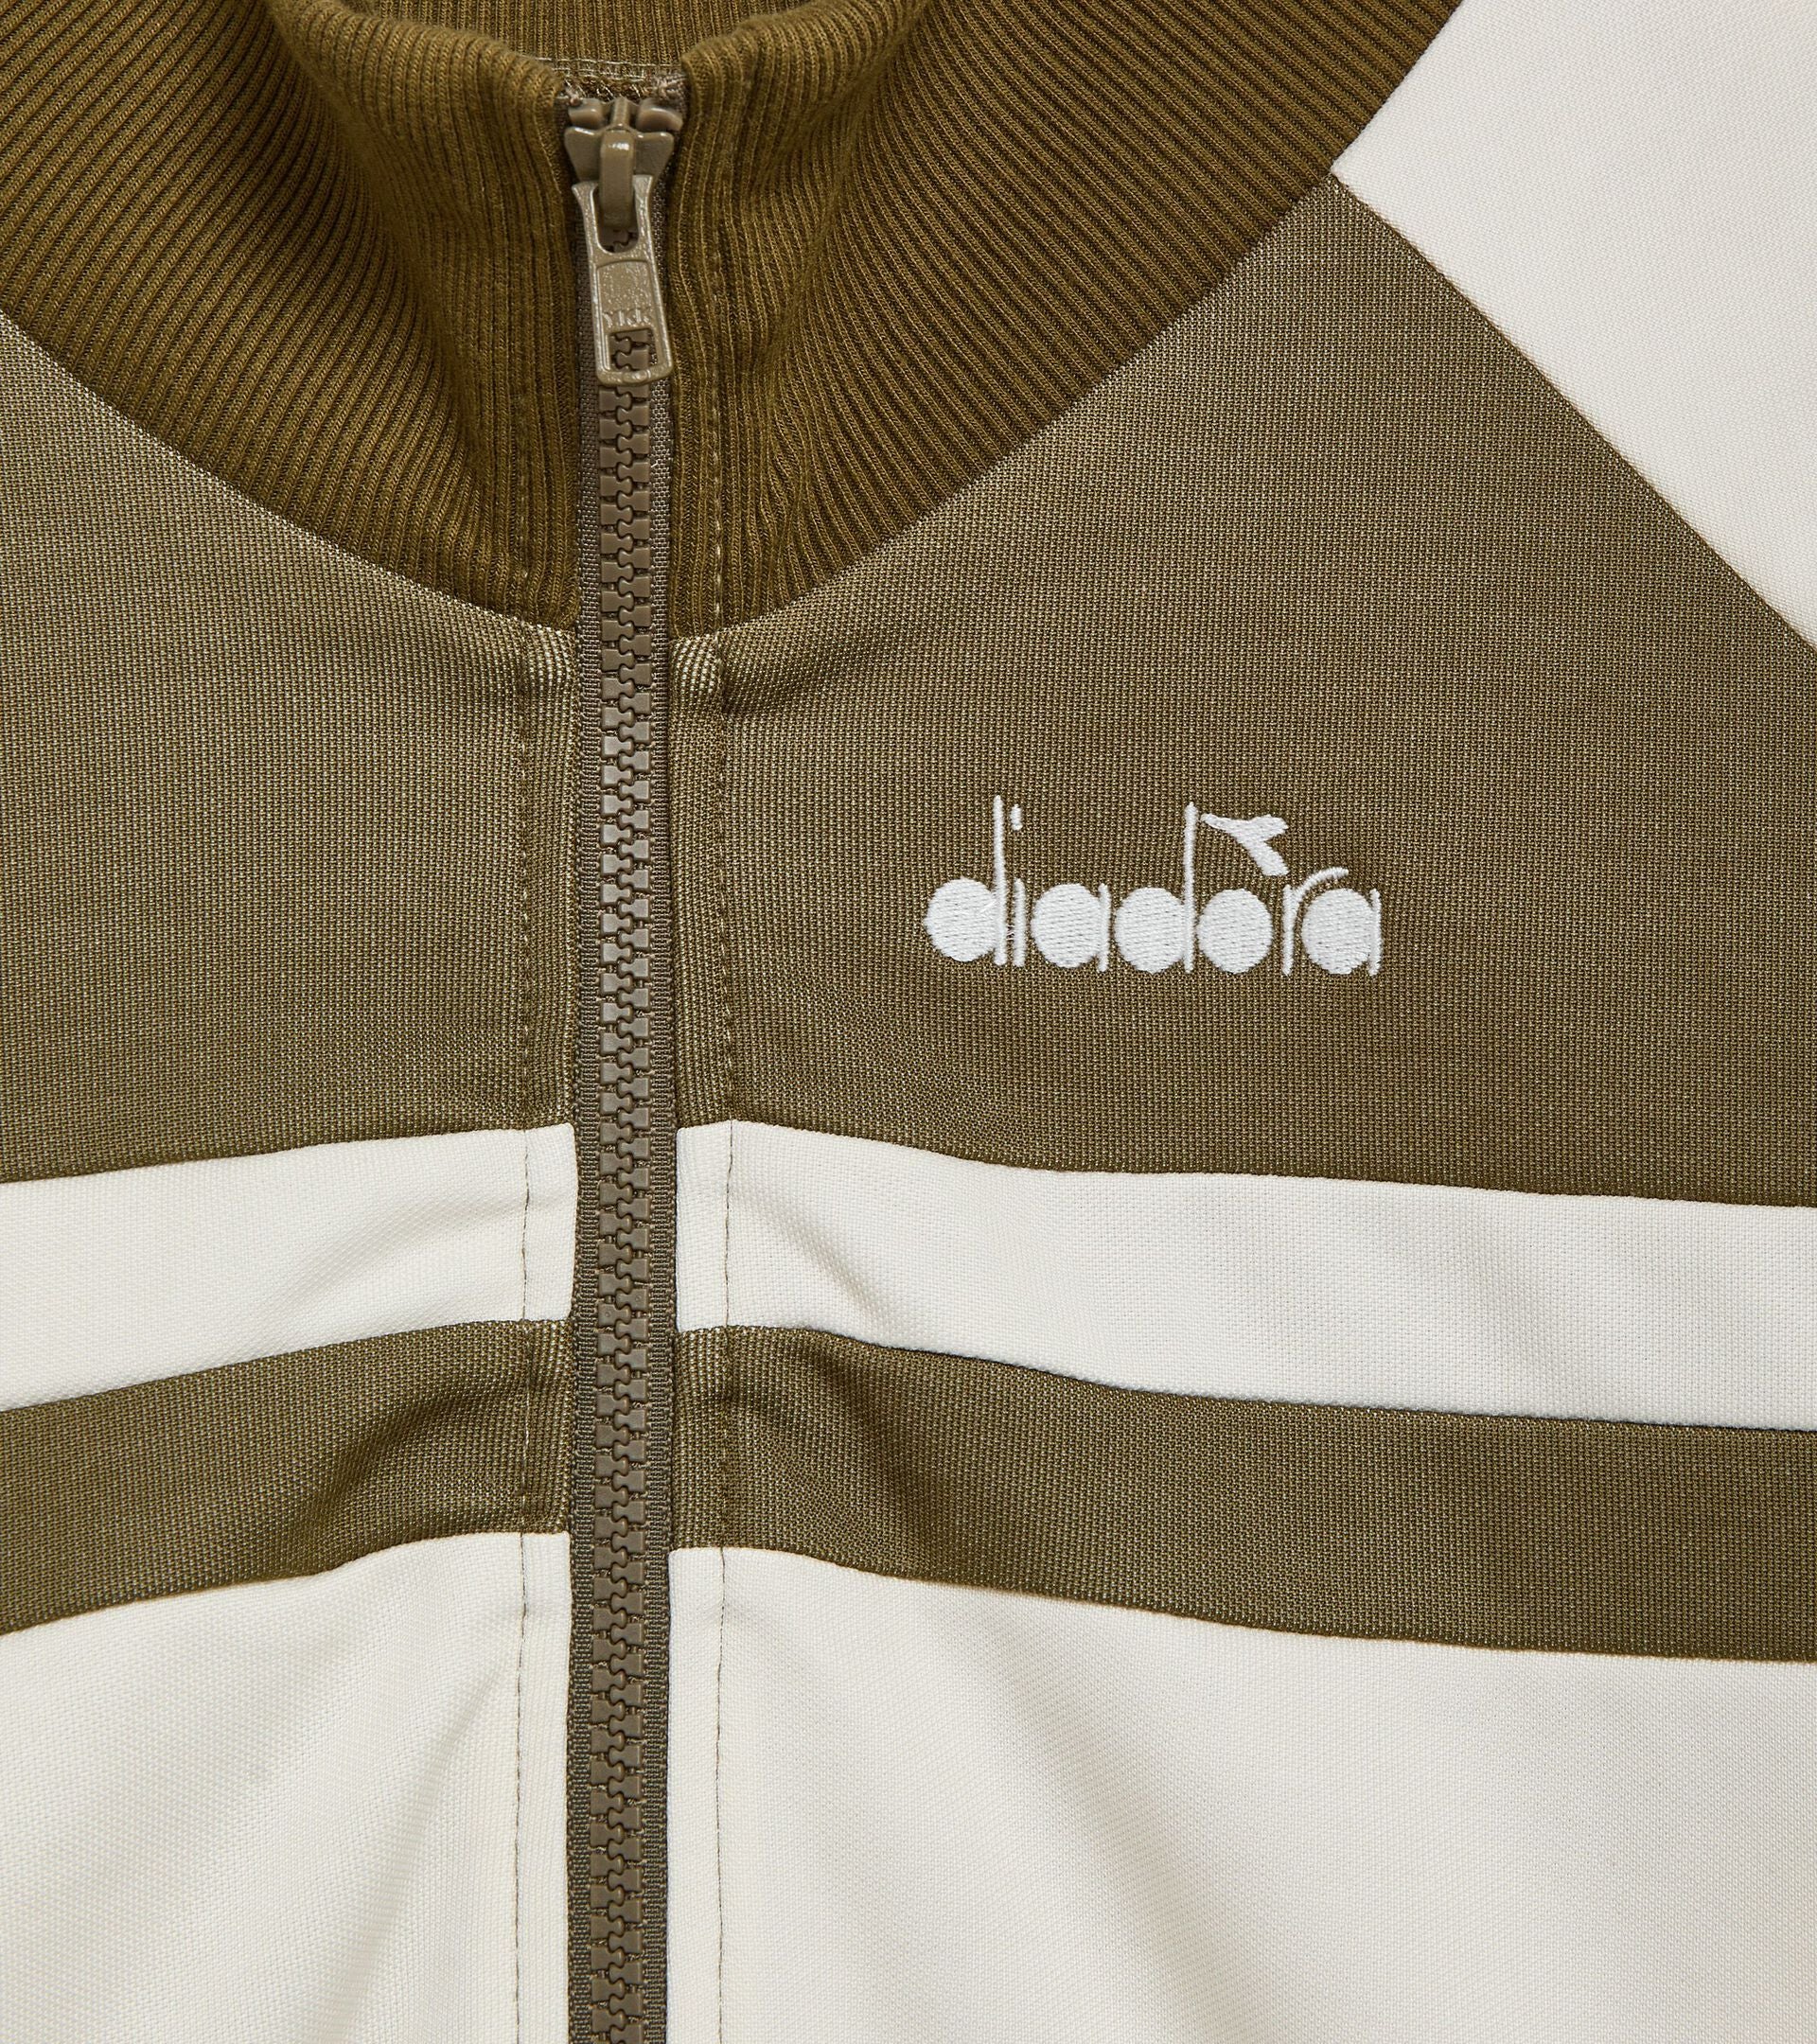 Diadora 80s Style Track Jacket In Kiwi Green